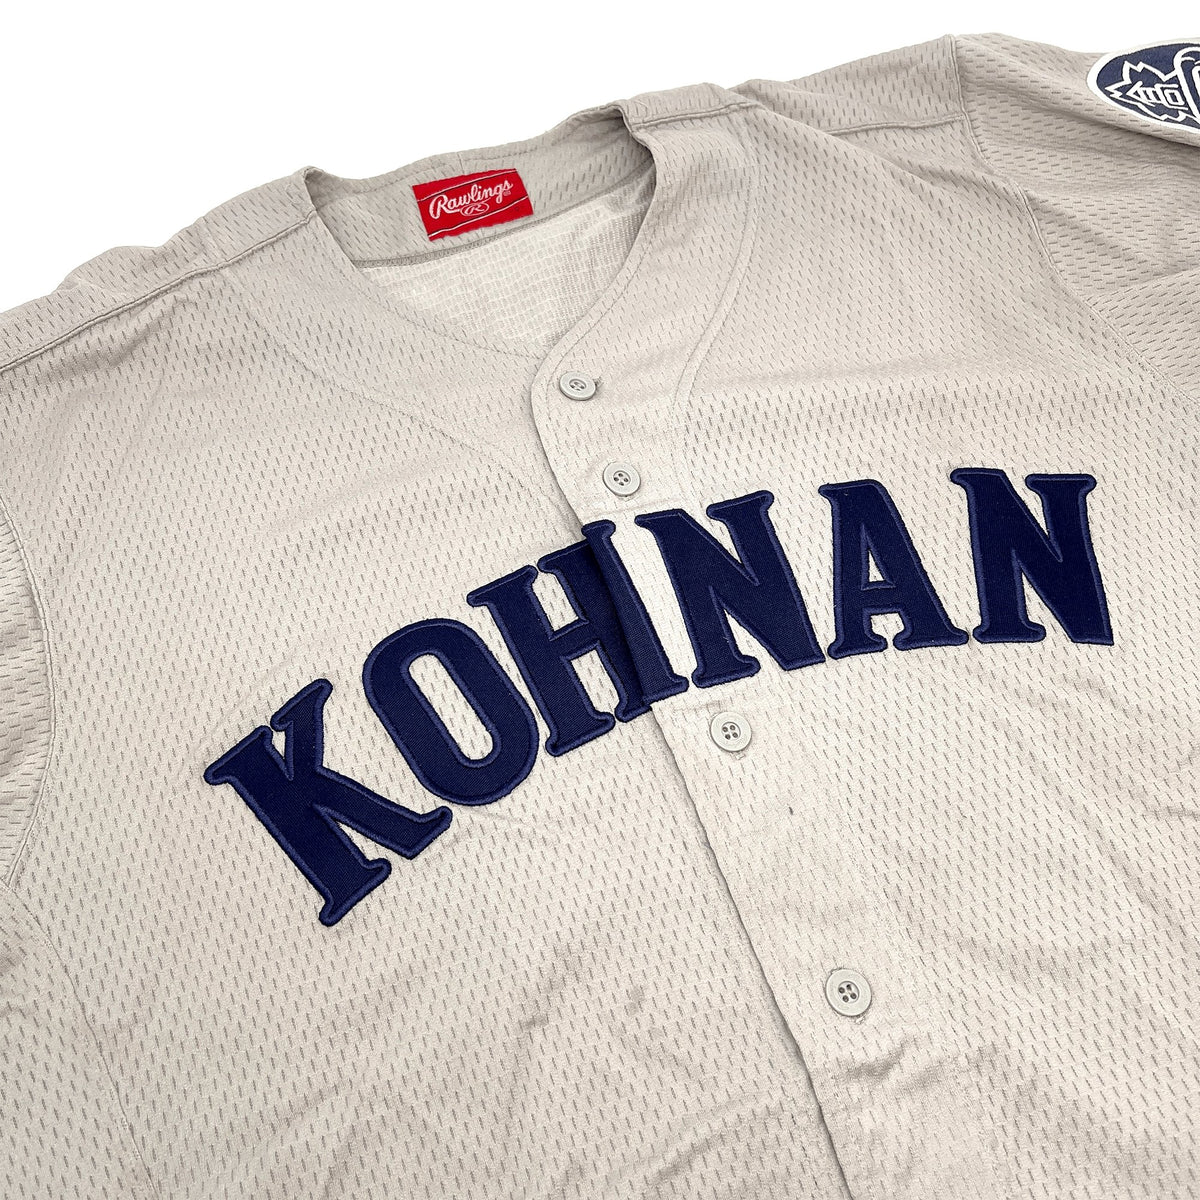 Vintage Japan Rawlings Koshien Kohnan Tokyo Kanagawa High School Baseball Jersey - Sugoi JDM